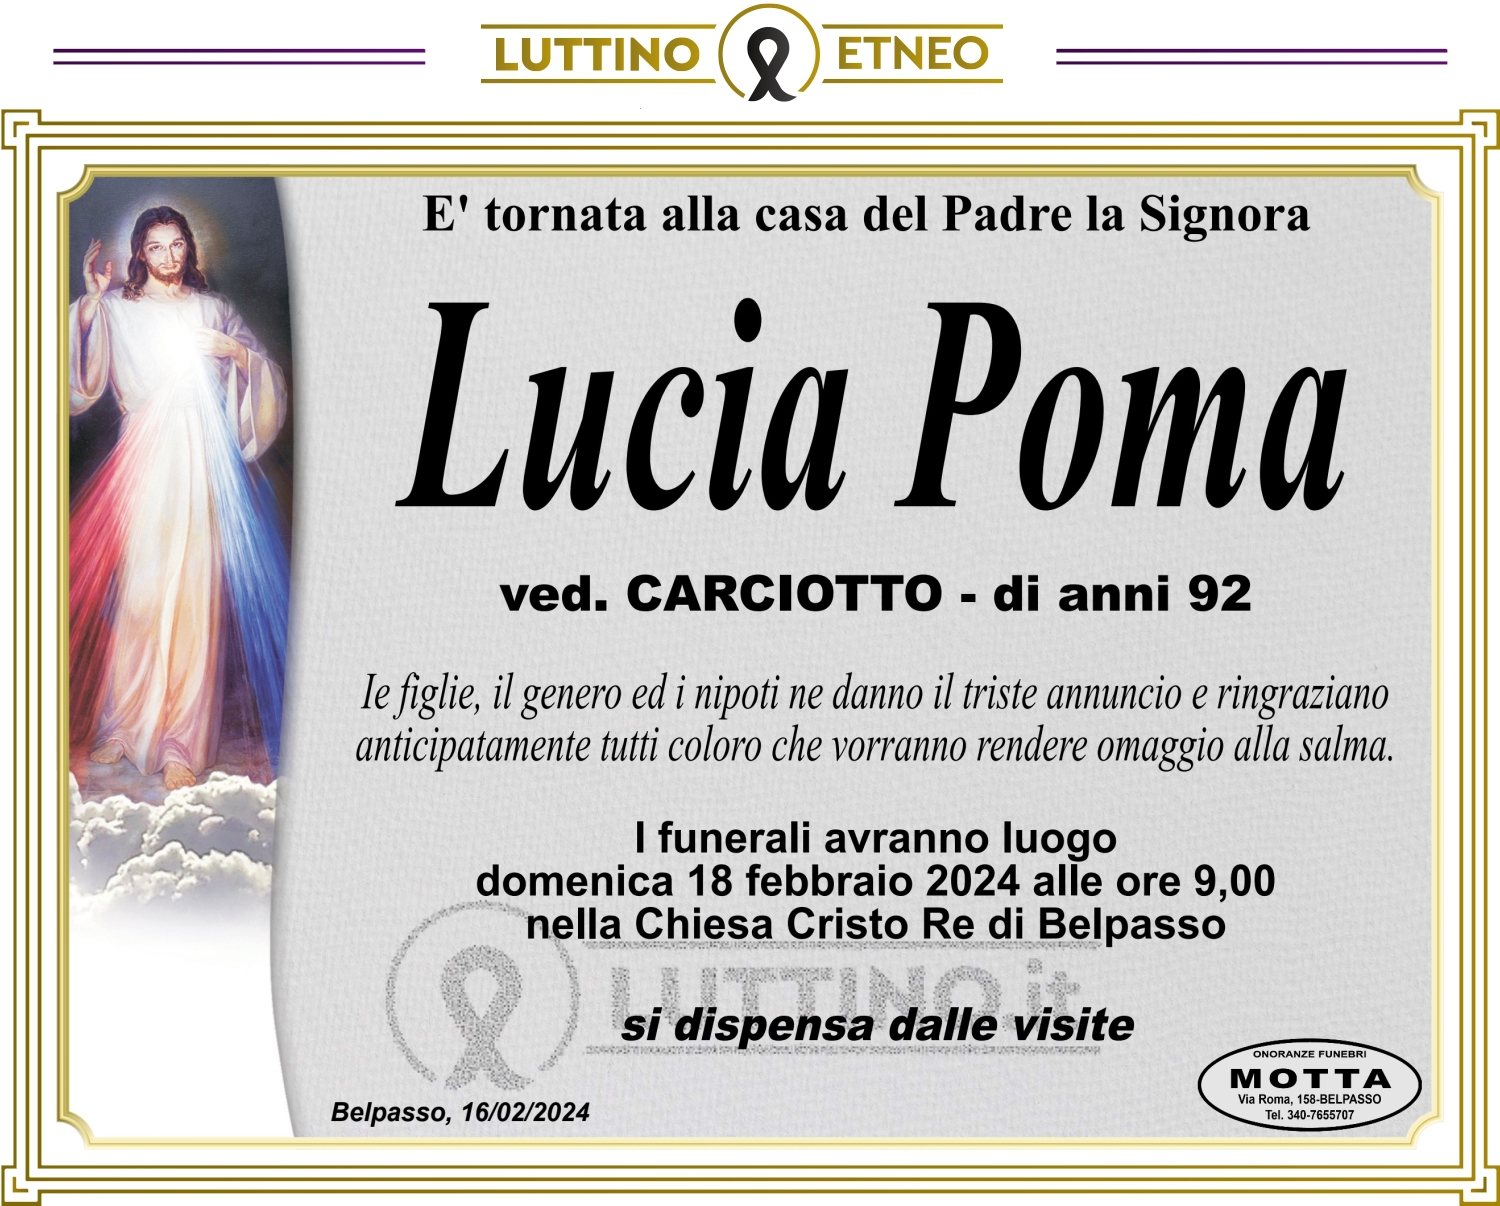 Lucia Poma